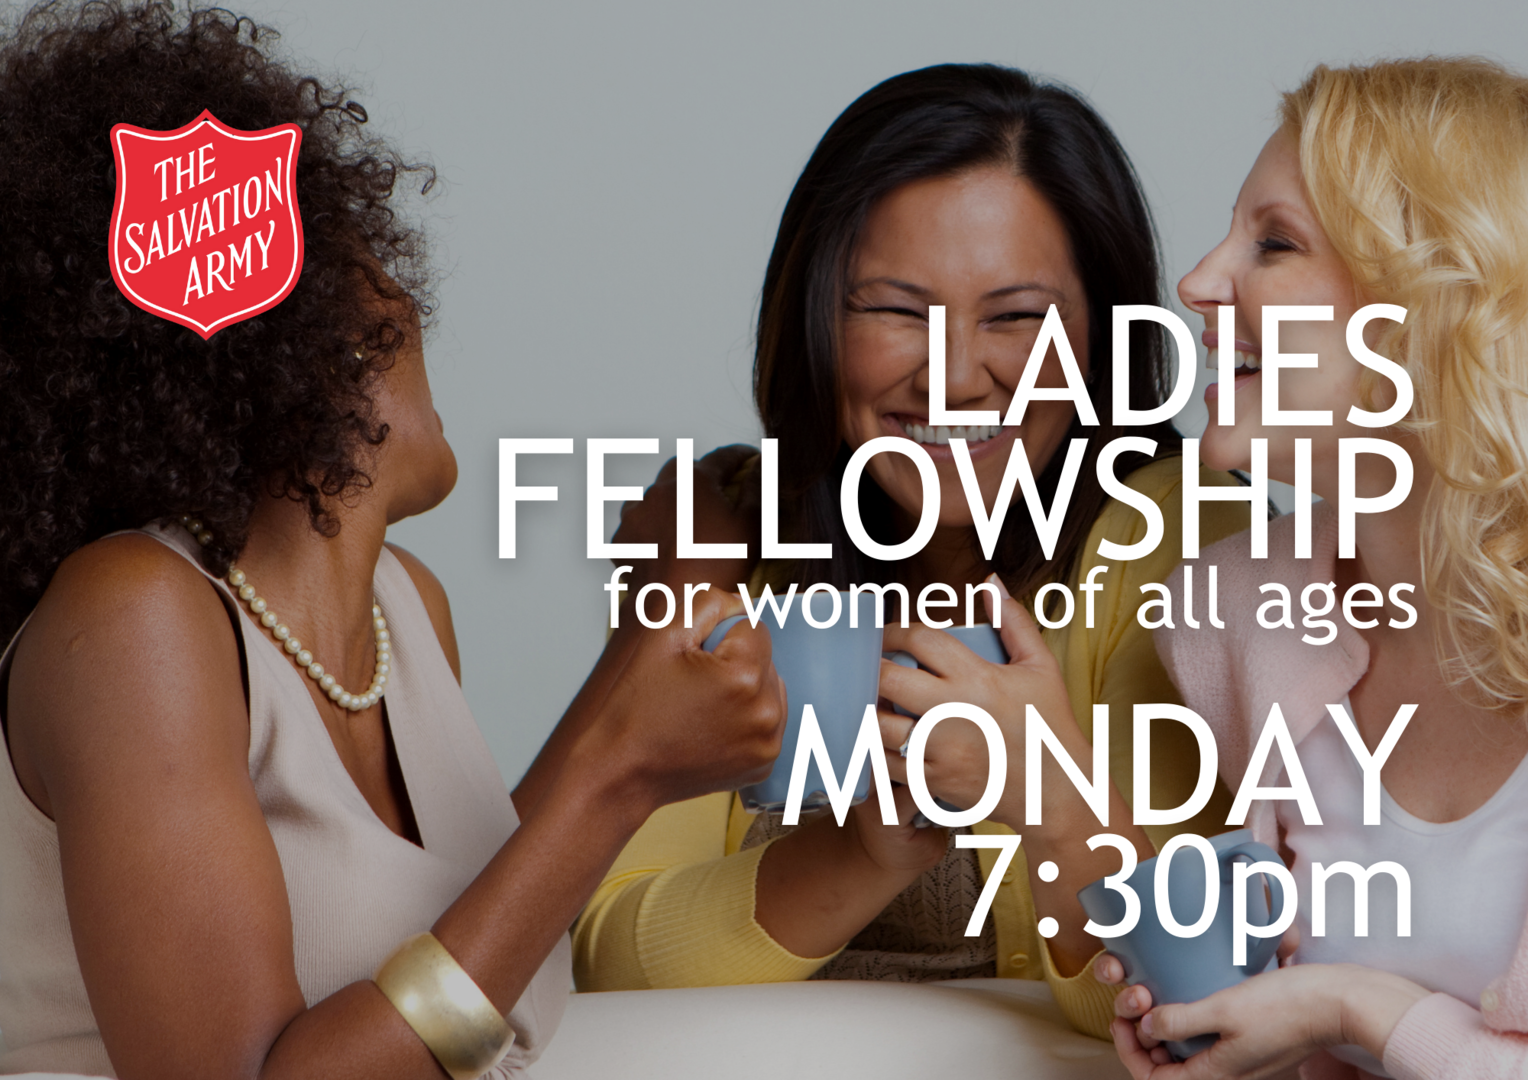 Ladies Fellowship, Monday 7:30pm